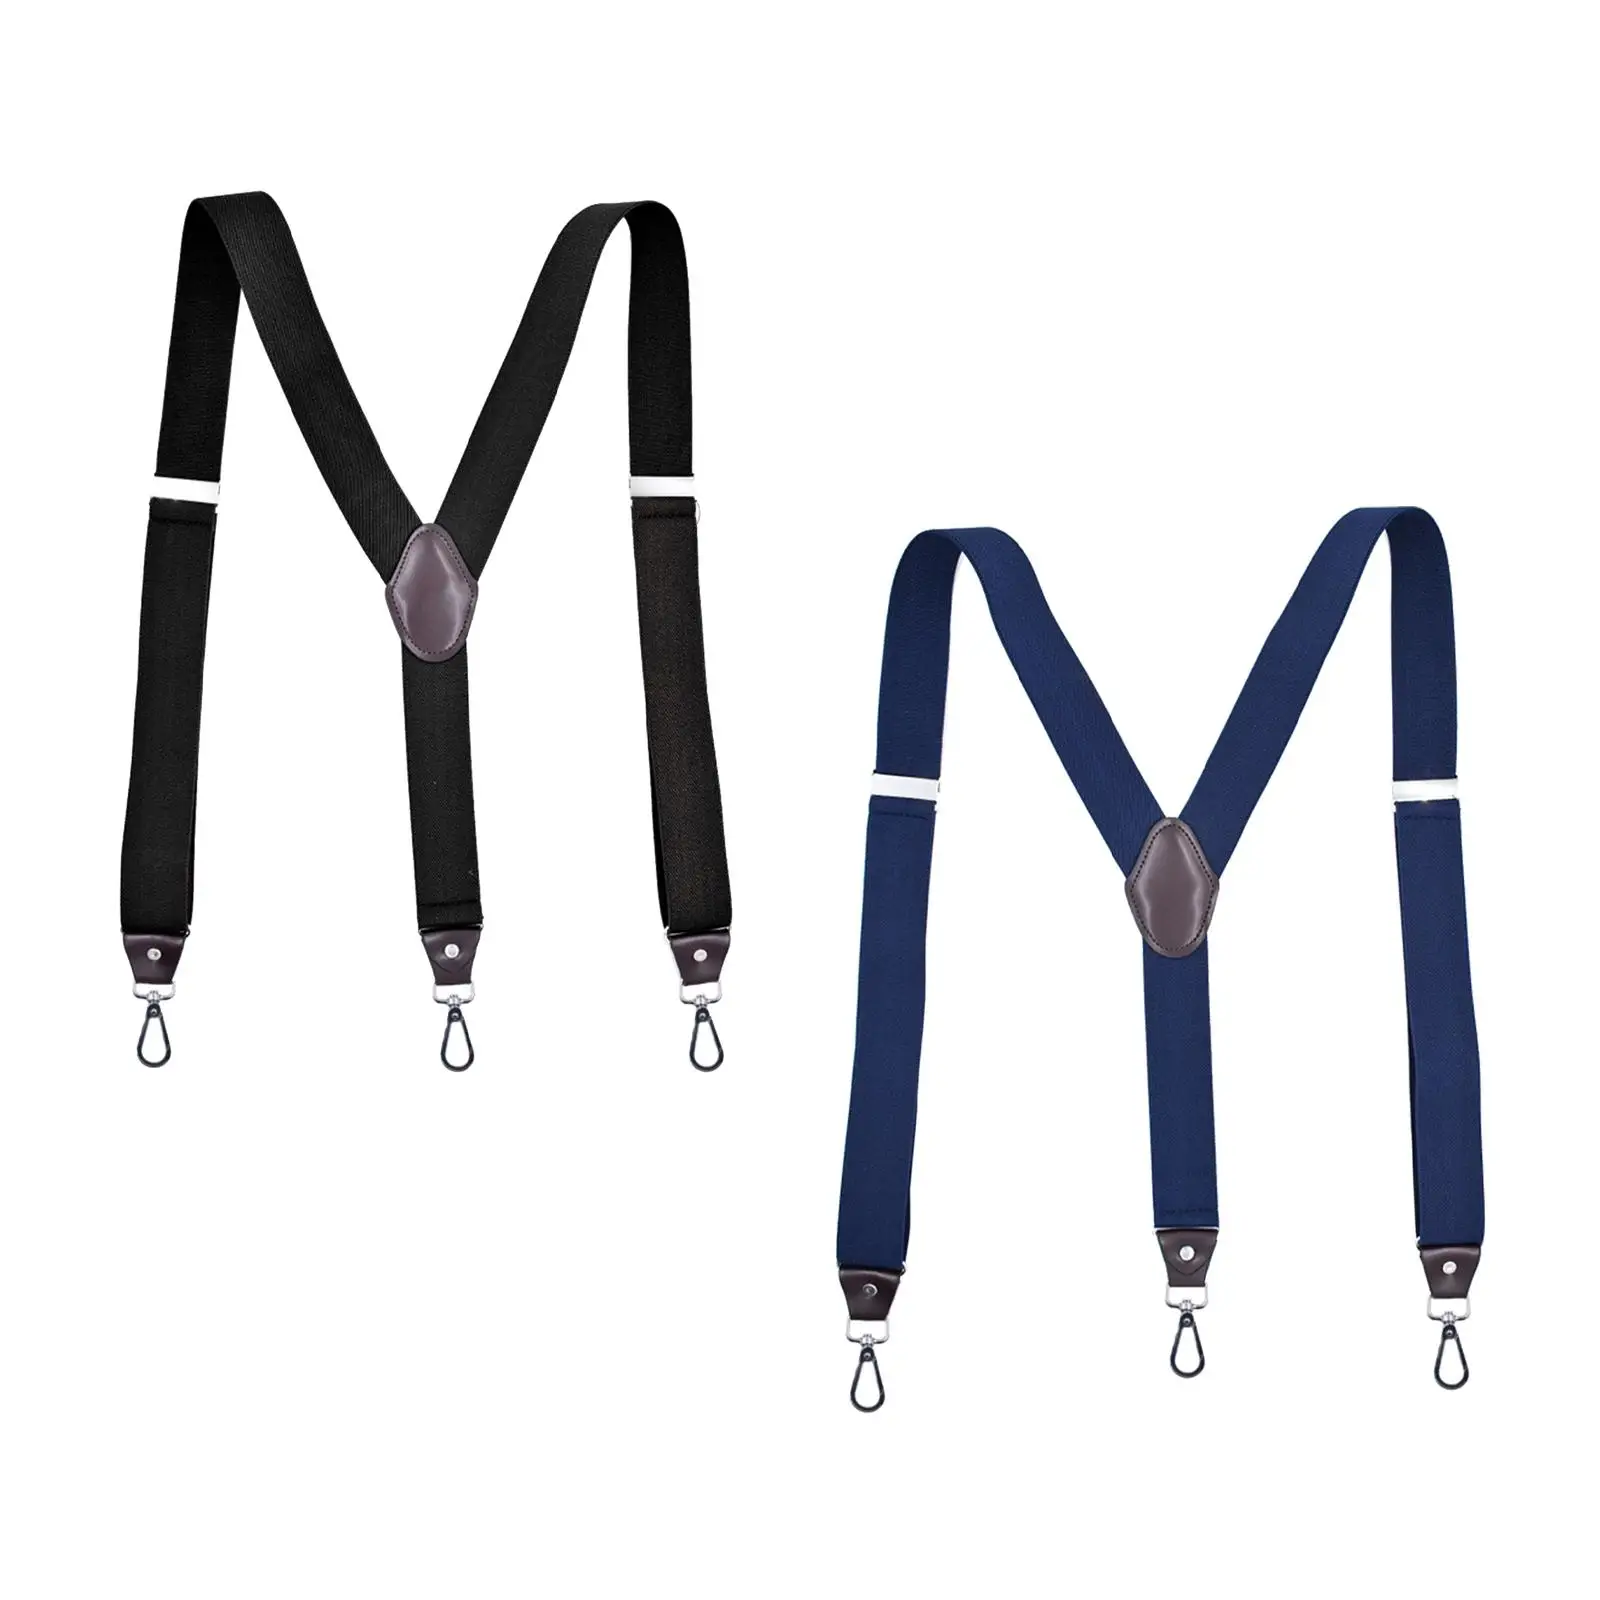 Fashion Suspenders Hooks Adjustable Solid Color Strap Belt for Pants Adult Work Gift Skirt